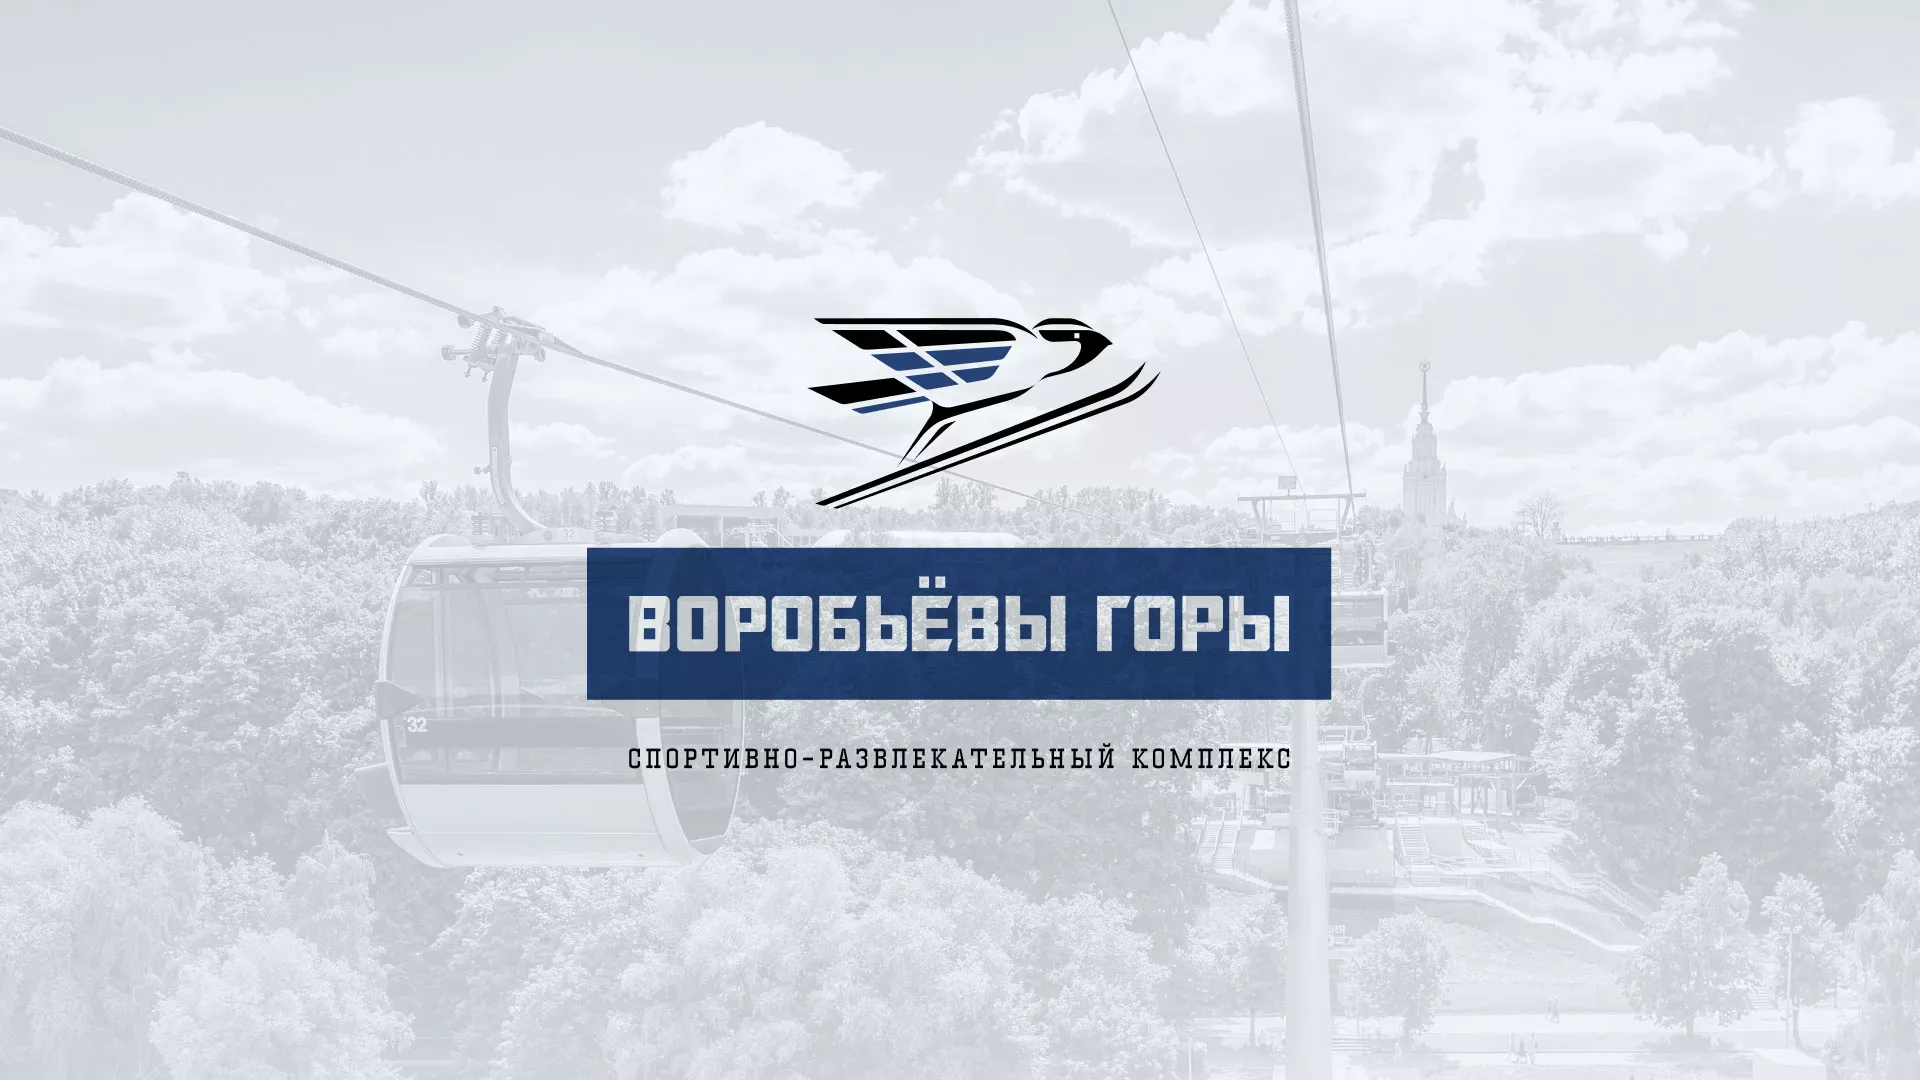 Разработка сайта в Краснослободске для спортивно-развлекательного комплекса «Воробьёвы горы»